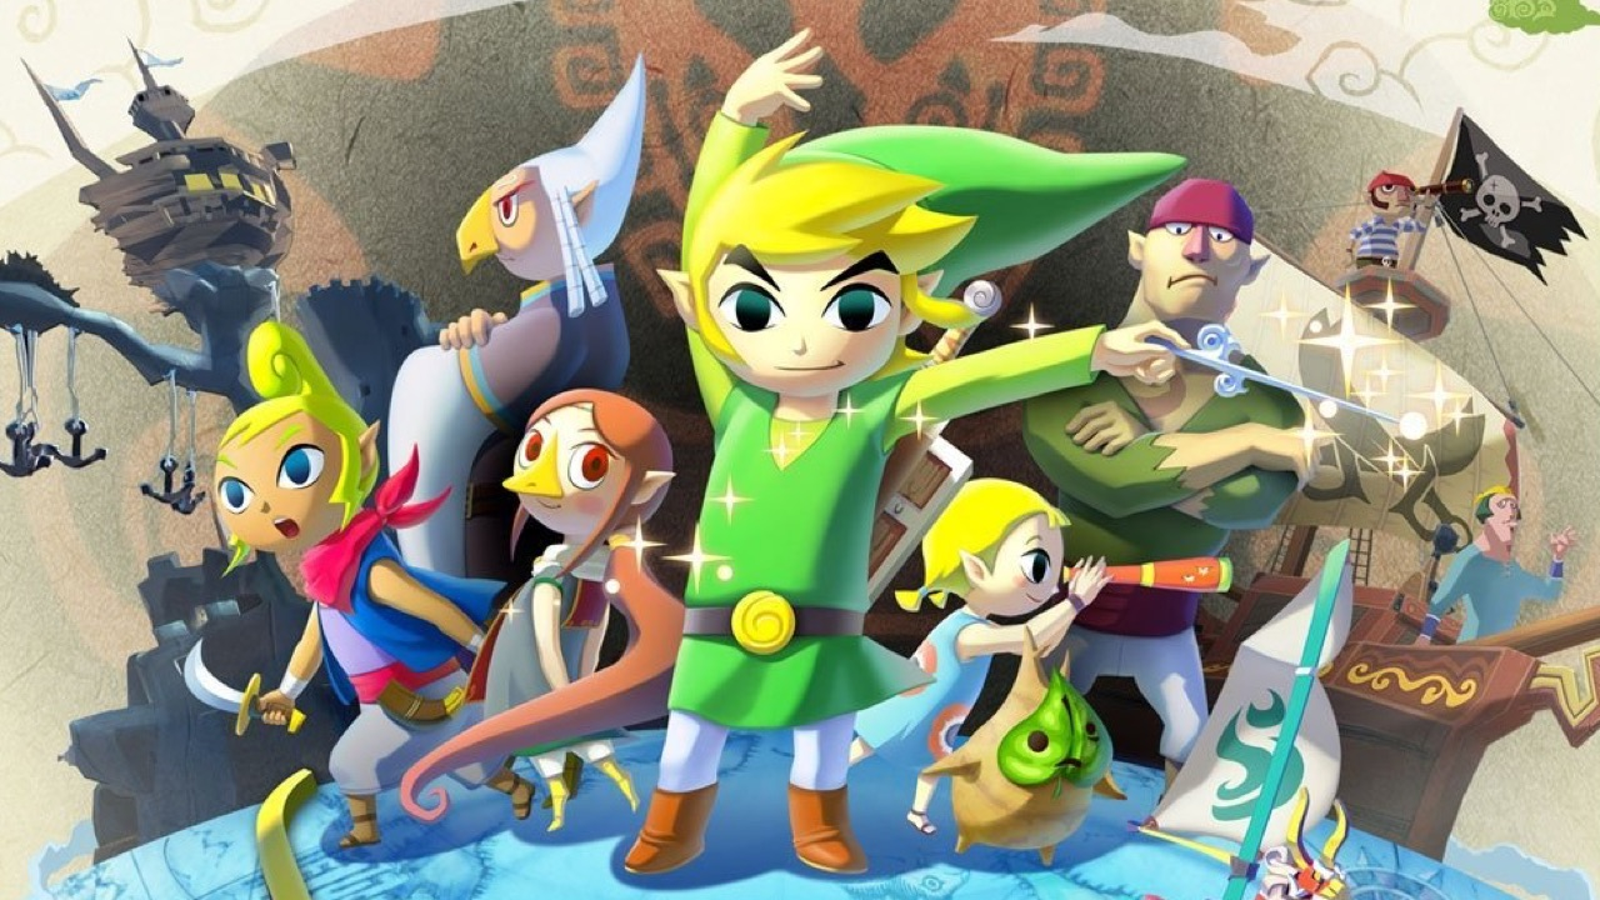  The Legend of Zelda: The Wind Waker HD : Nintendo of